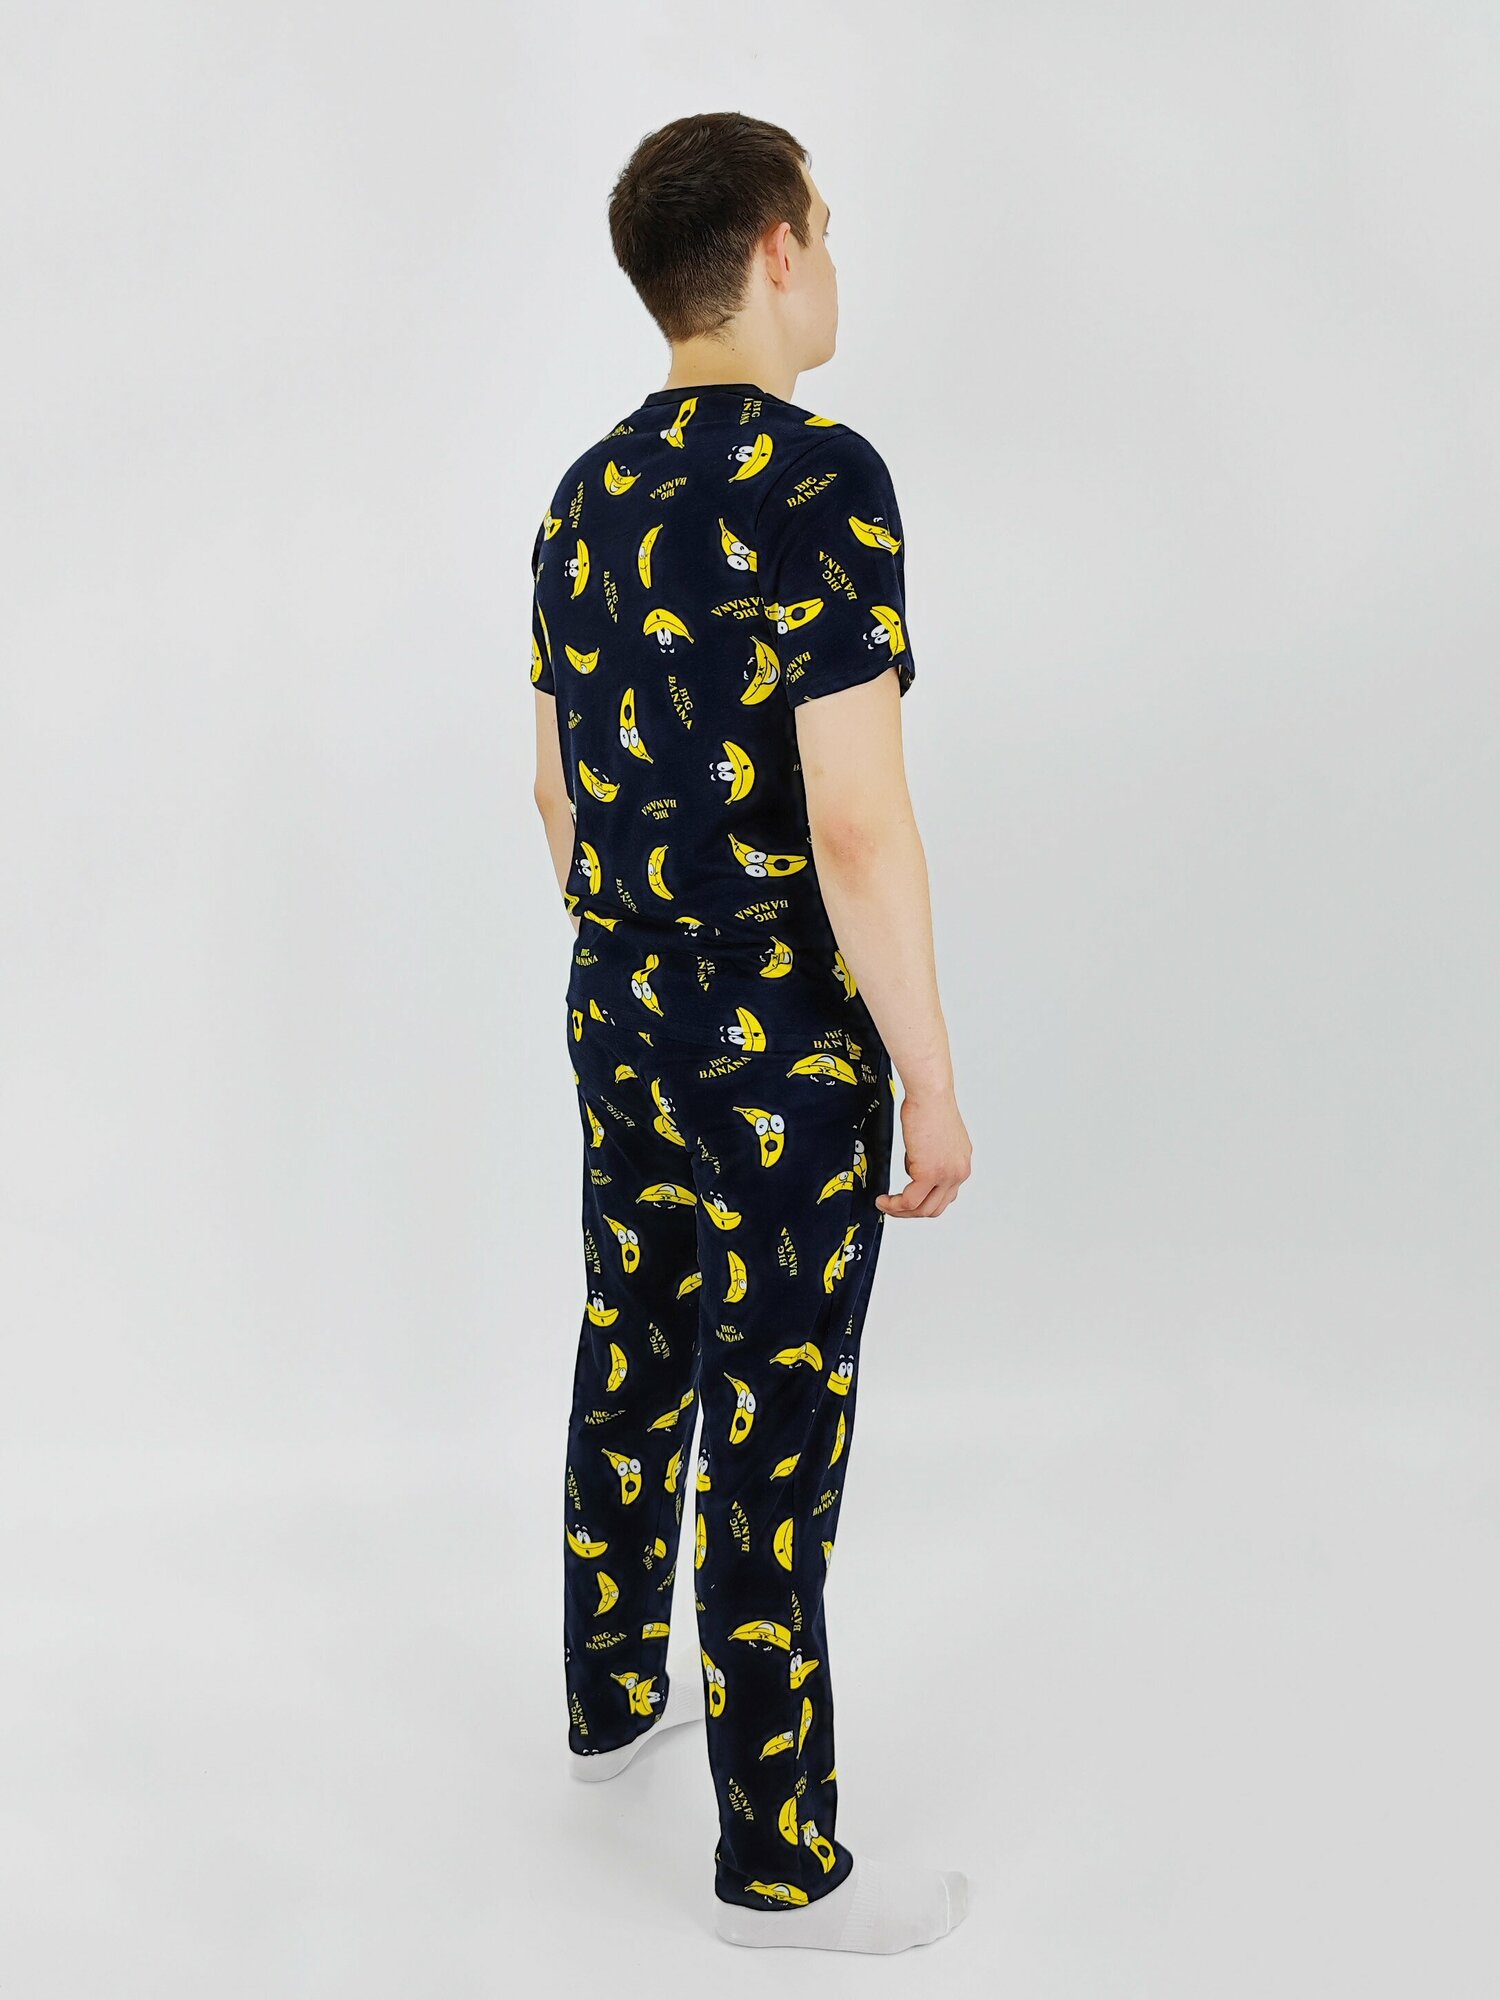 Мужская пижама, мужской пижамный комплект ARISTARHOV, Футболка + Брюки, Бананчик, синий желтый, размер 52 - фотография № 3